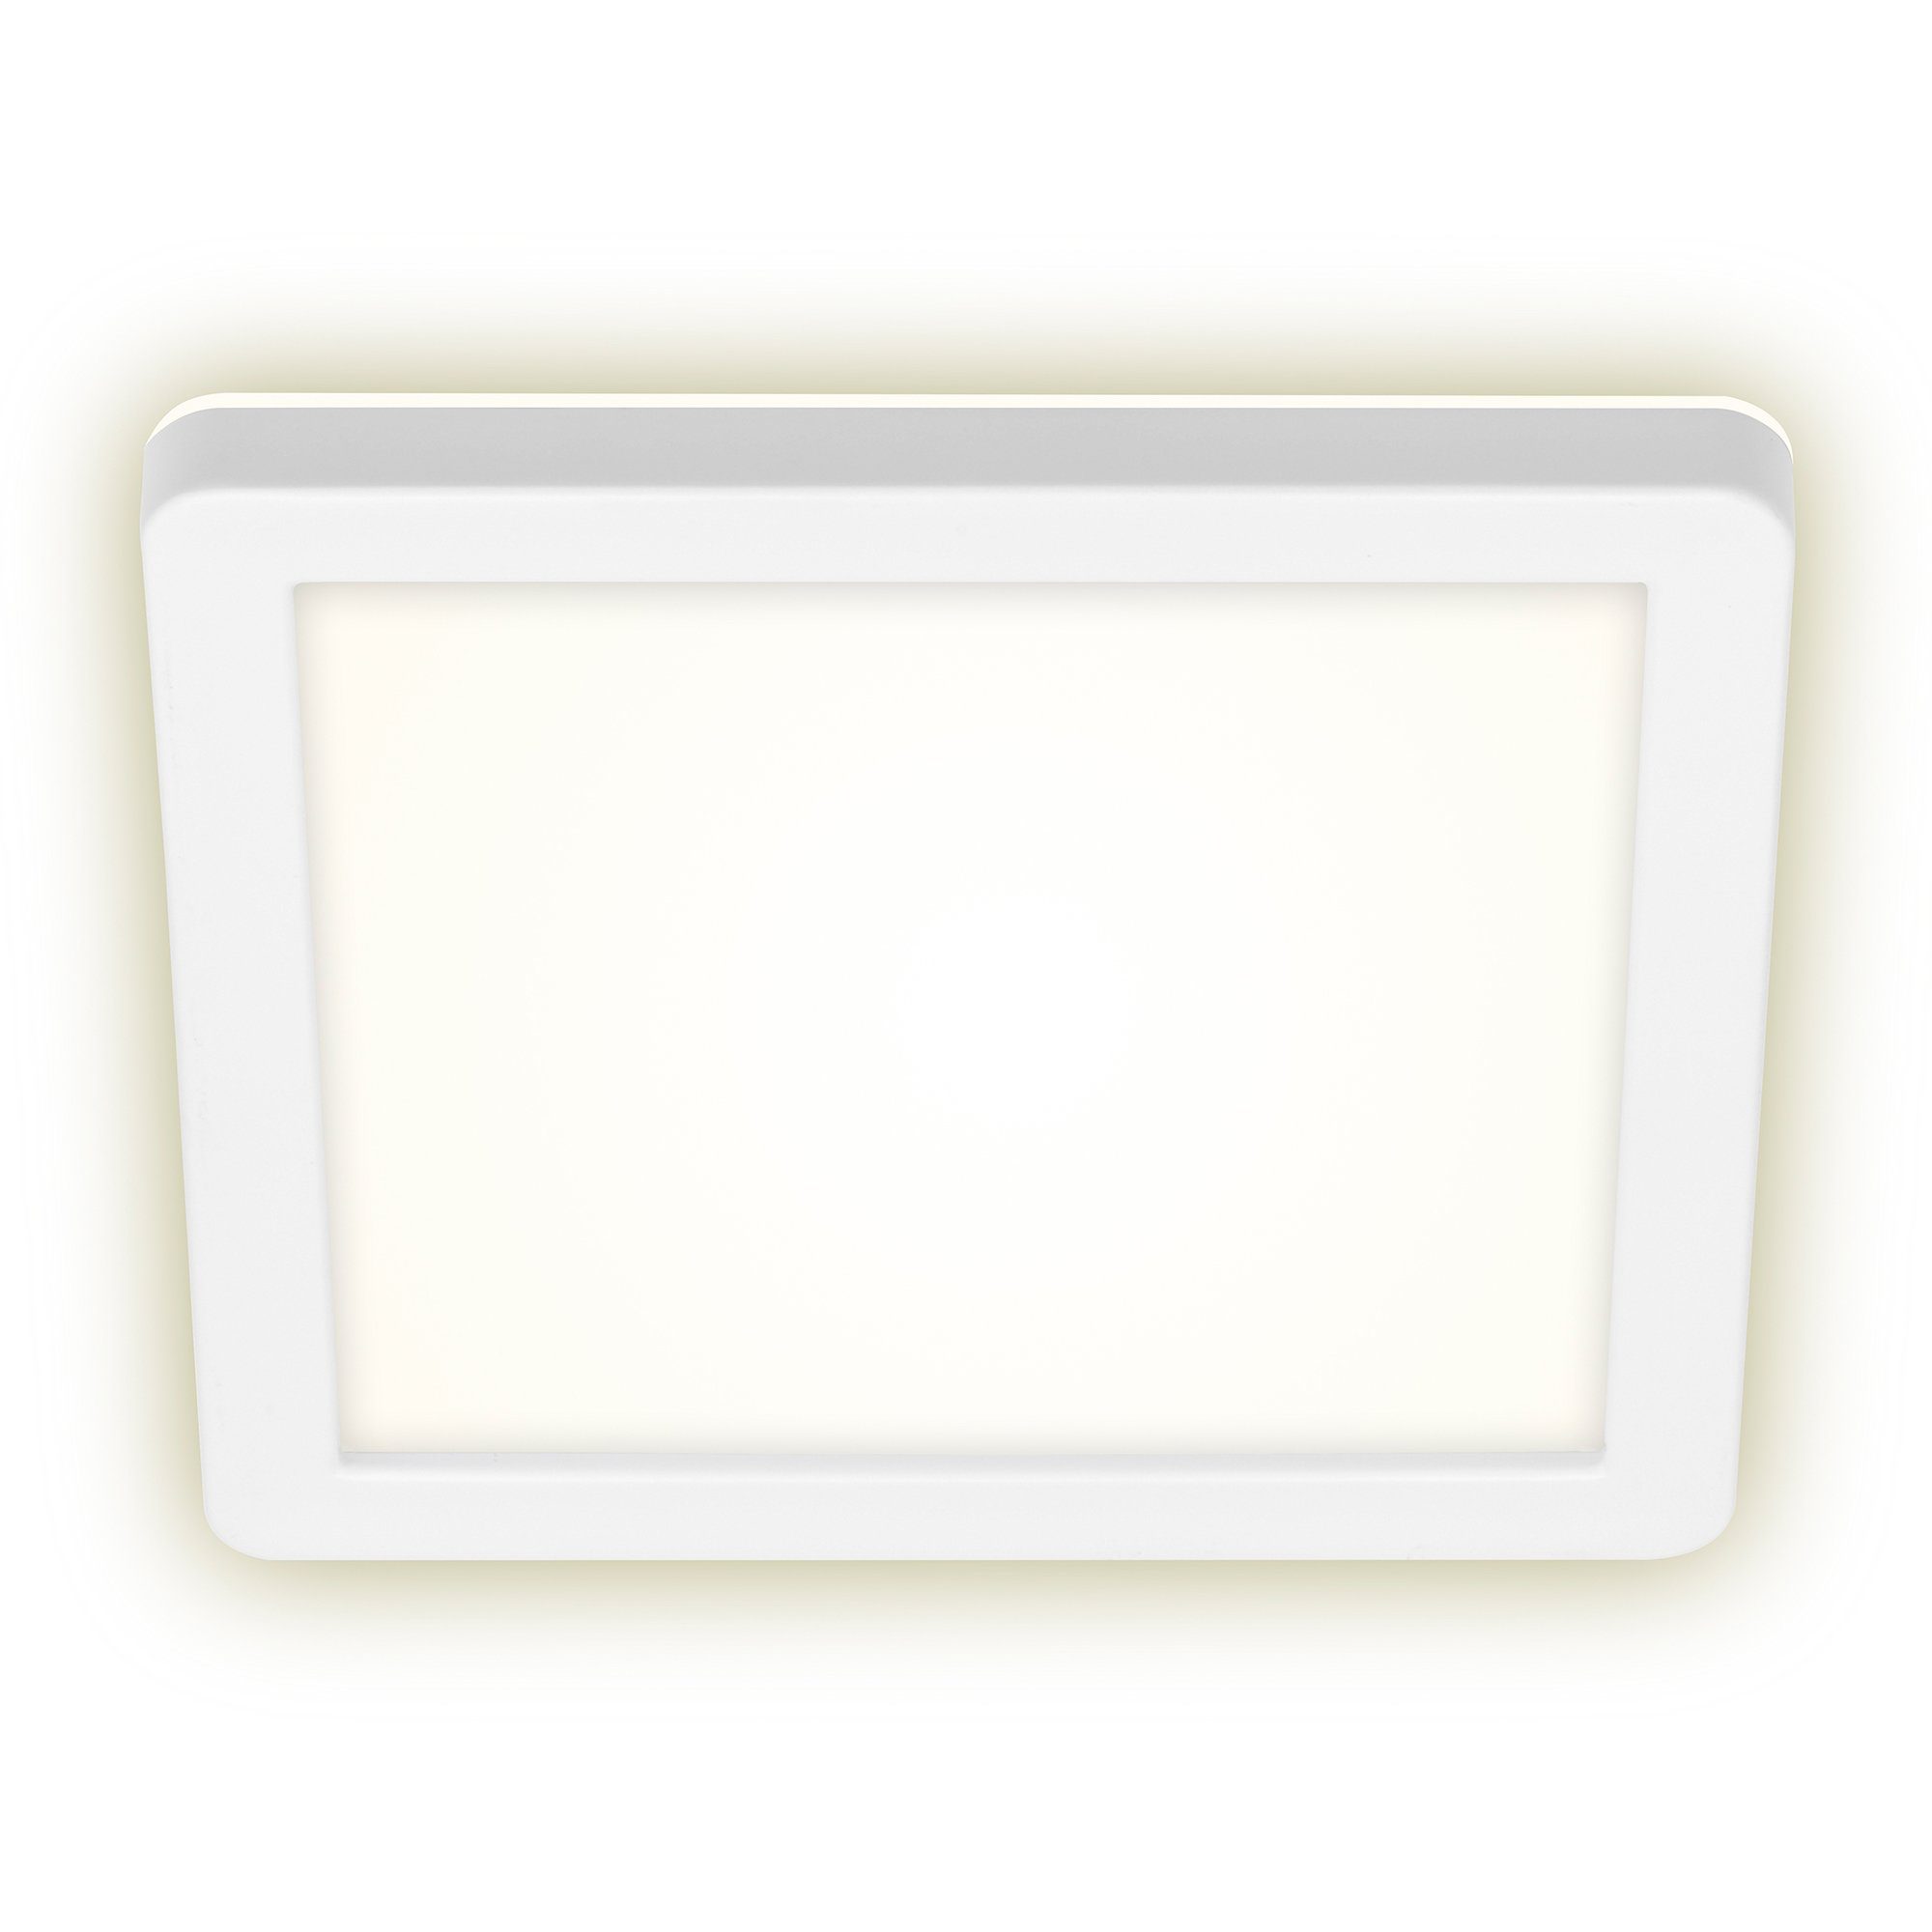 Briloner Leuchten LED Außen-Wandleuchte 3010-016, Spritzwasserschutz, indirektes Licht, LED fest verbaut, Neutralweiß, Außenleuchte, 19x19x2,8cm, Weiß, 8W, Aussen, Hauswand, Balkon, Wand